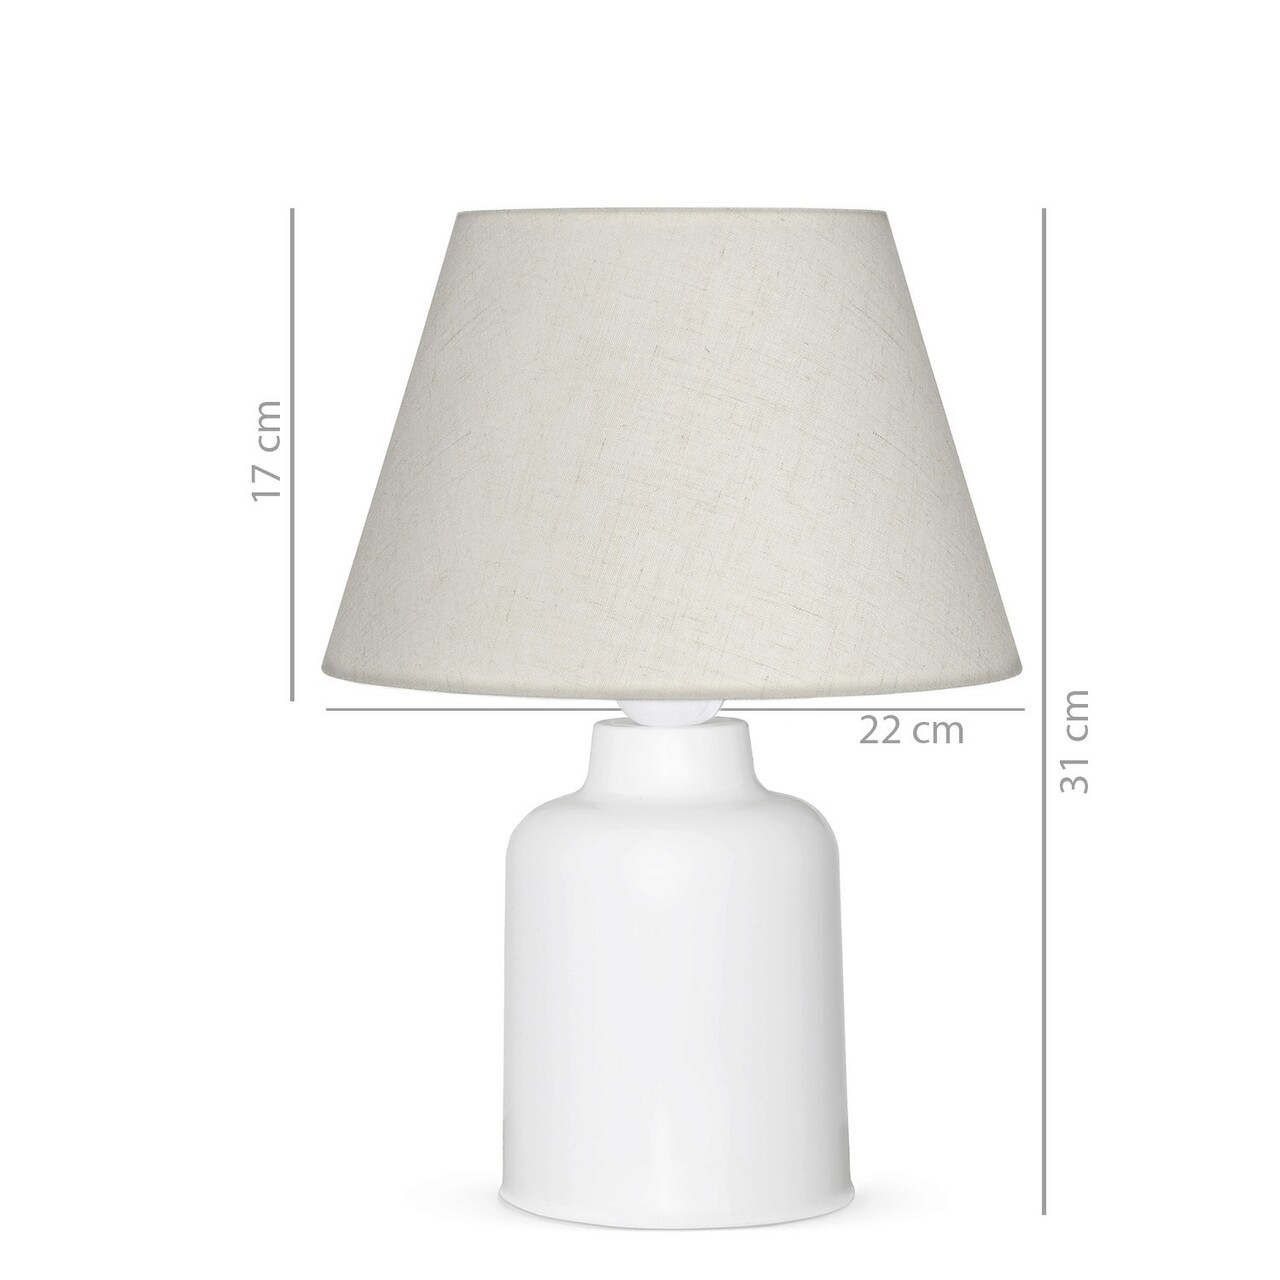 Lampa De Masa, Insignio, 780SGN1950, PVC, Crem